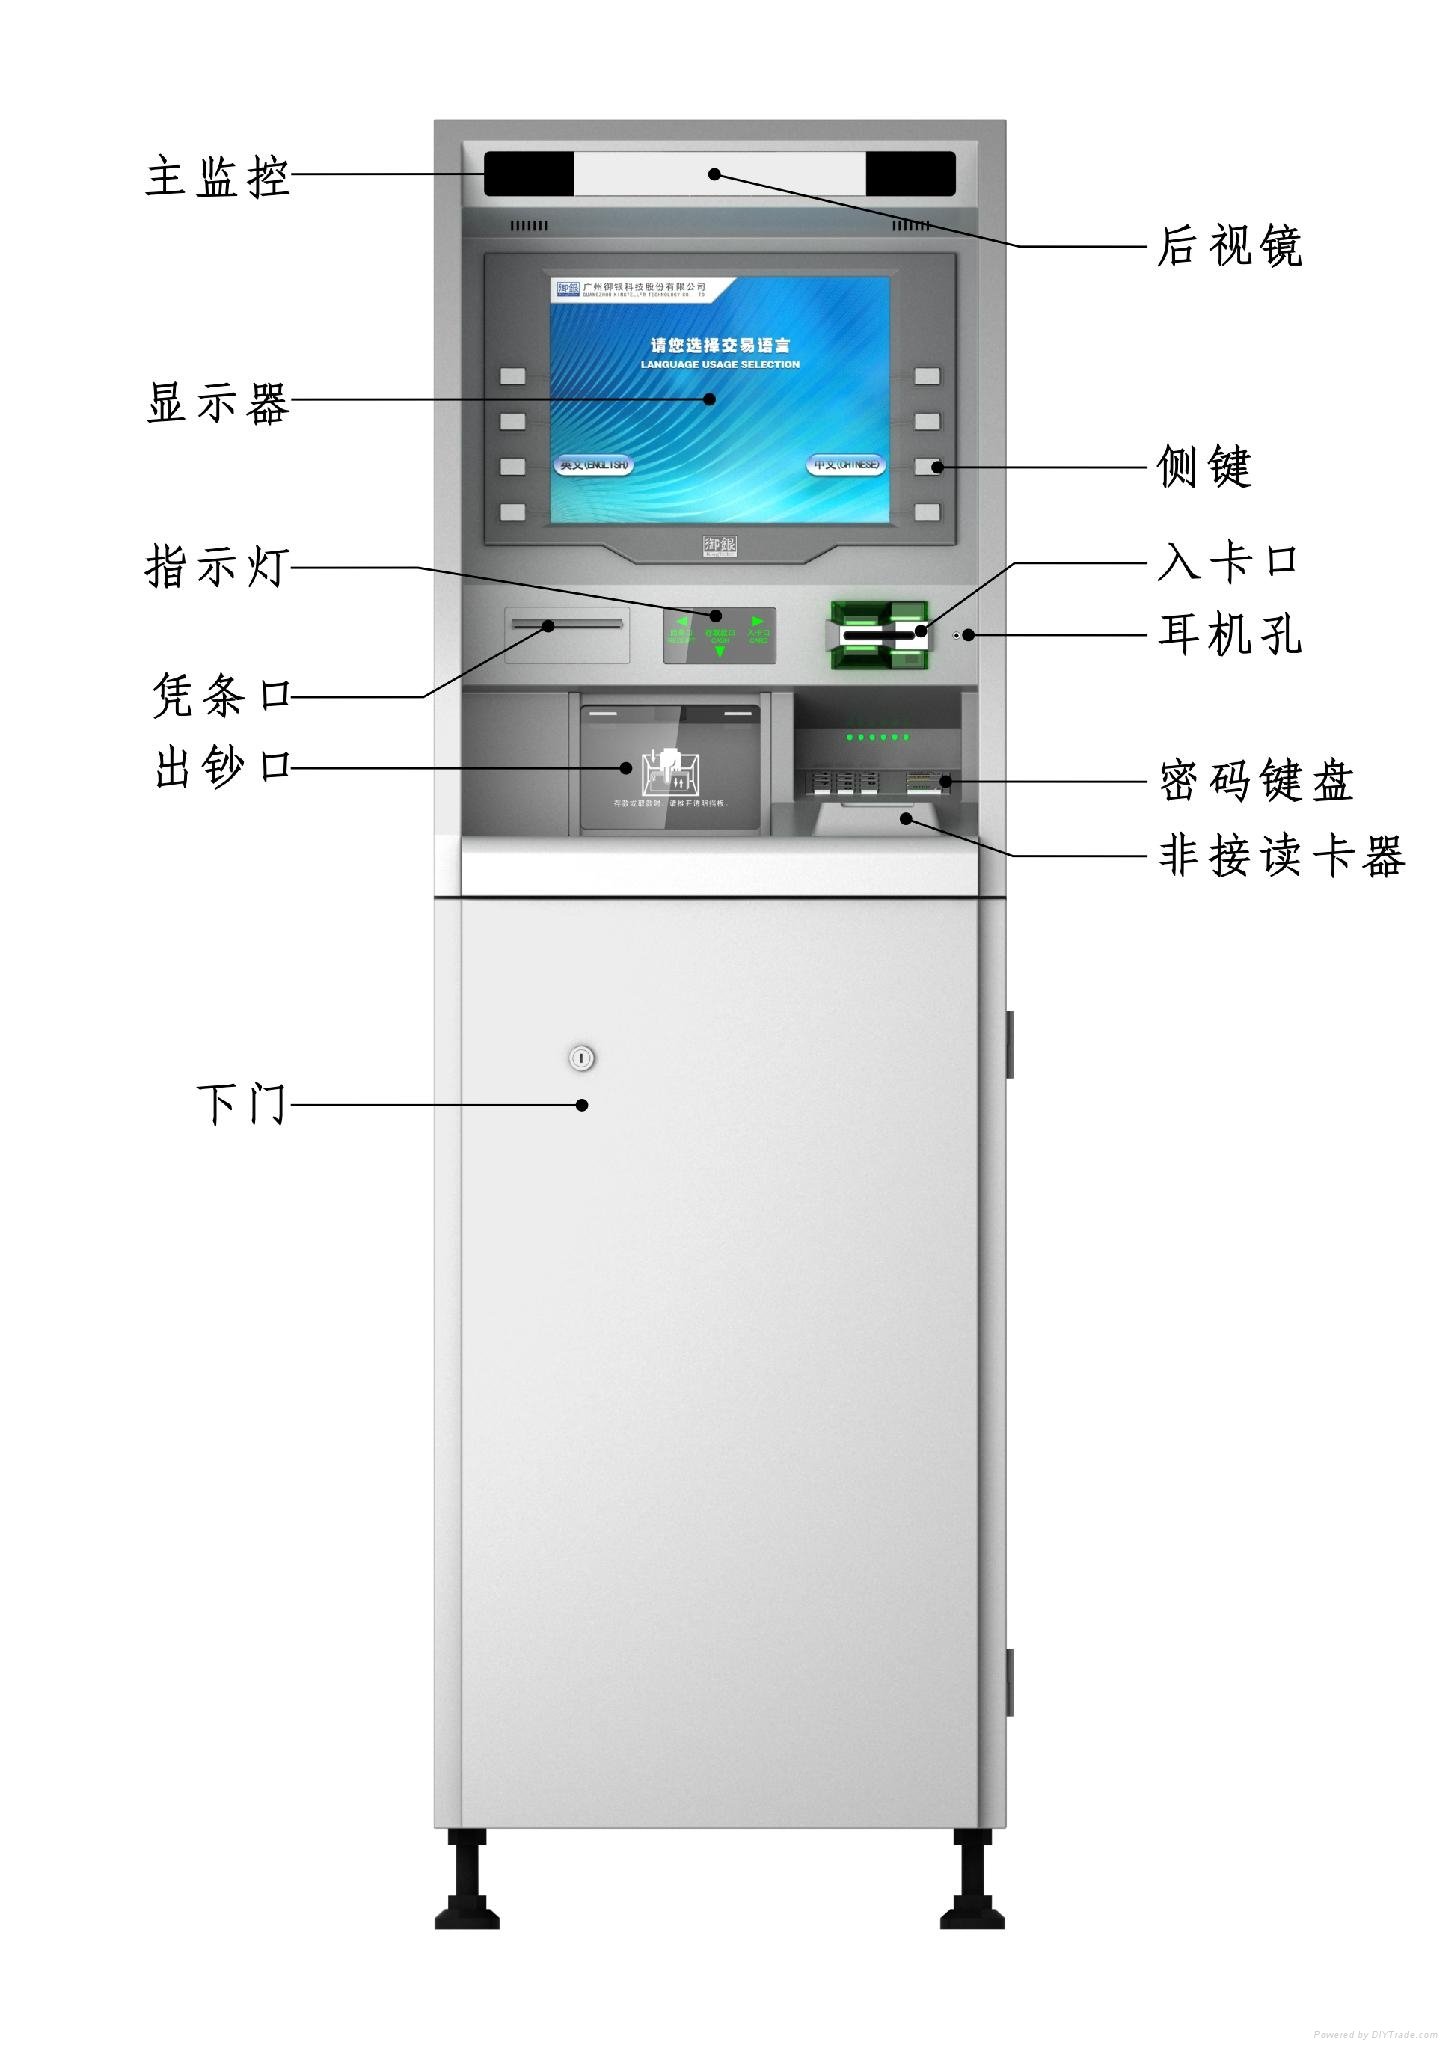 Lobby ATM 2